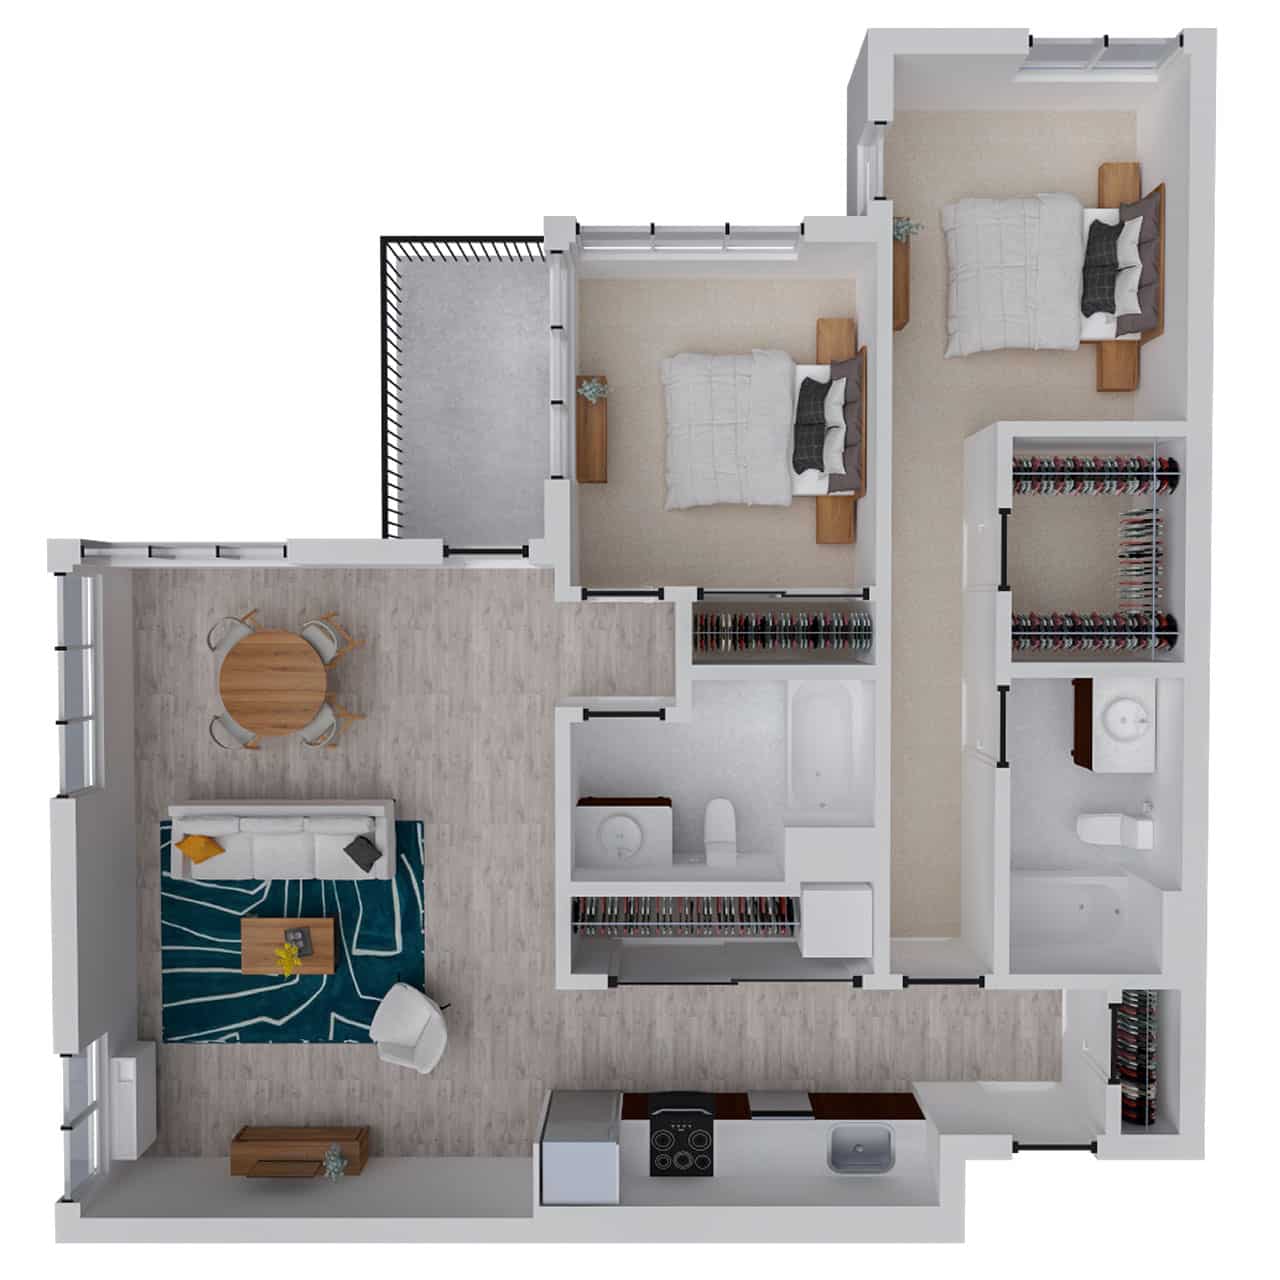 Attwell, B7 floor plan, 2 bedroom, 2 bath.